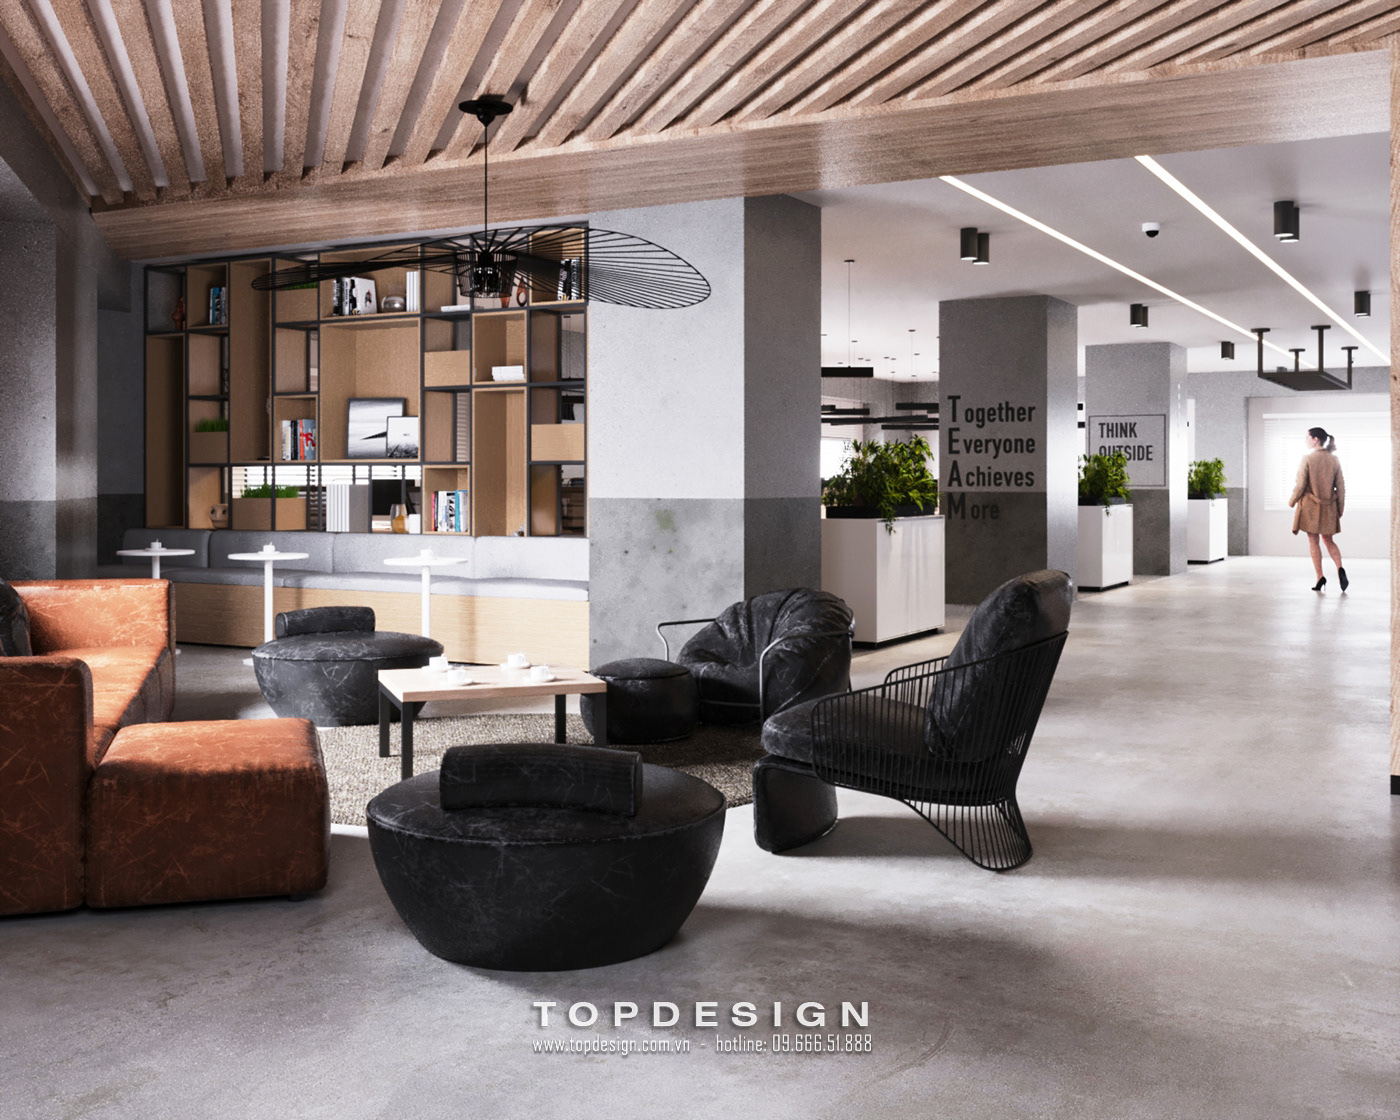 13.mẫu thiết kế decor văn phòng làm việc thoải mái, đơn giản_TOPDESIGN